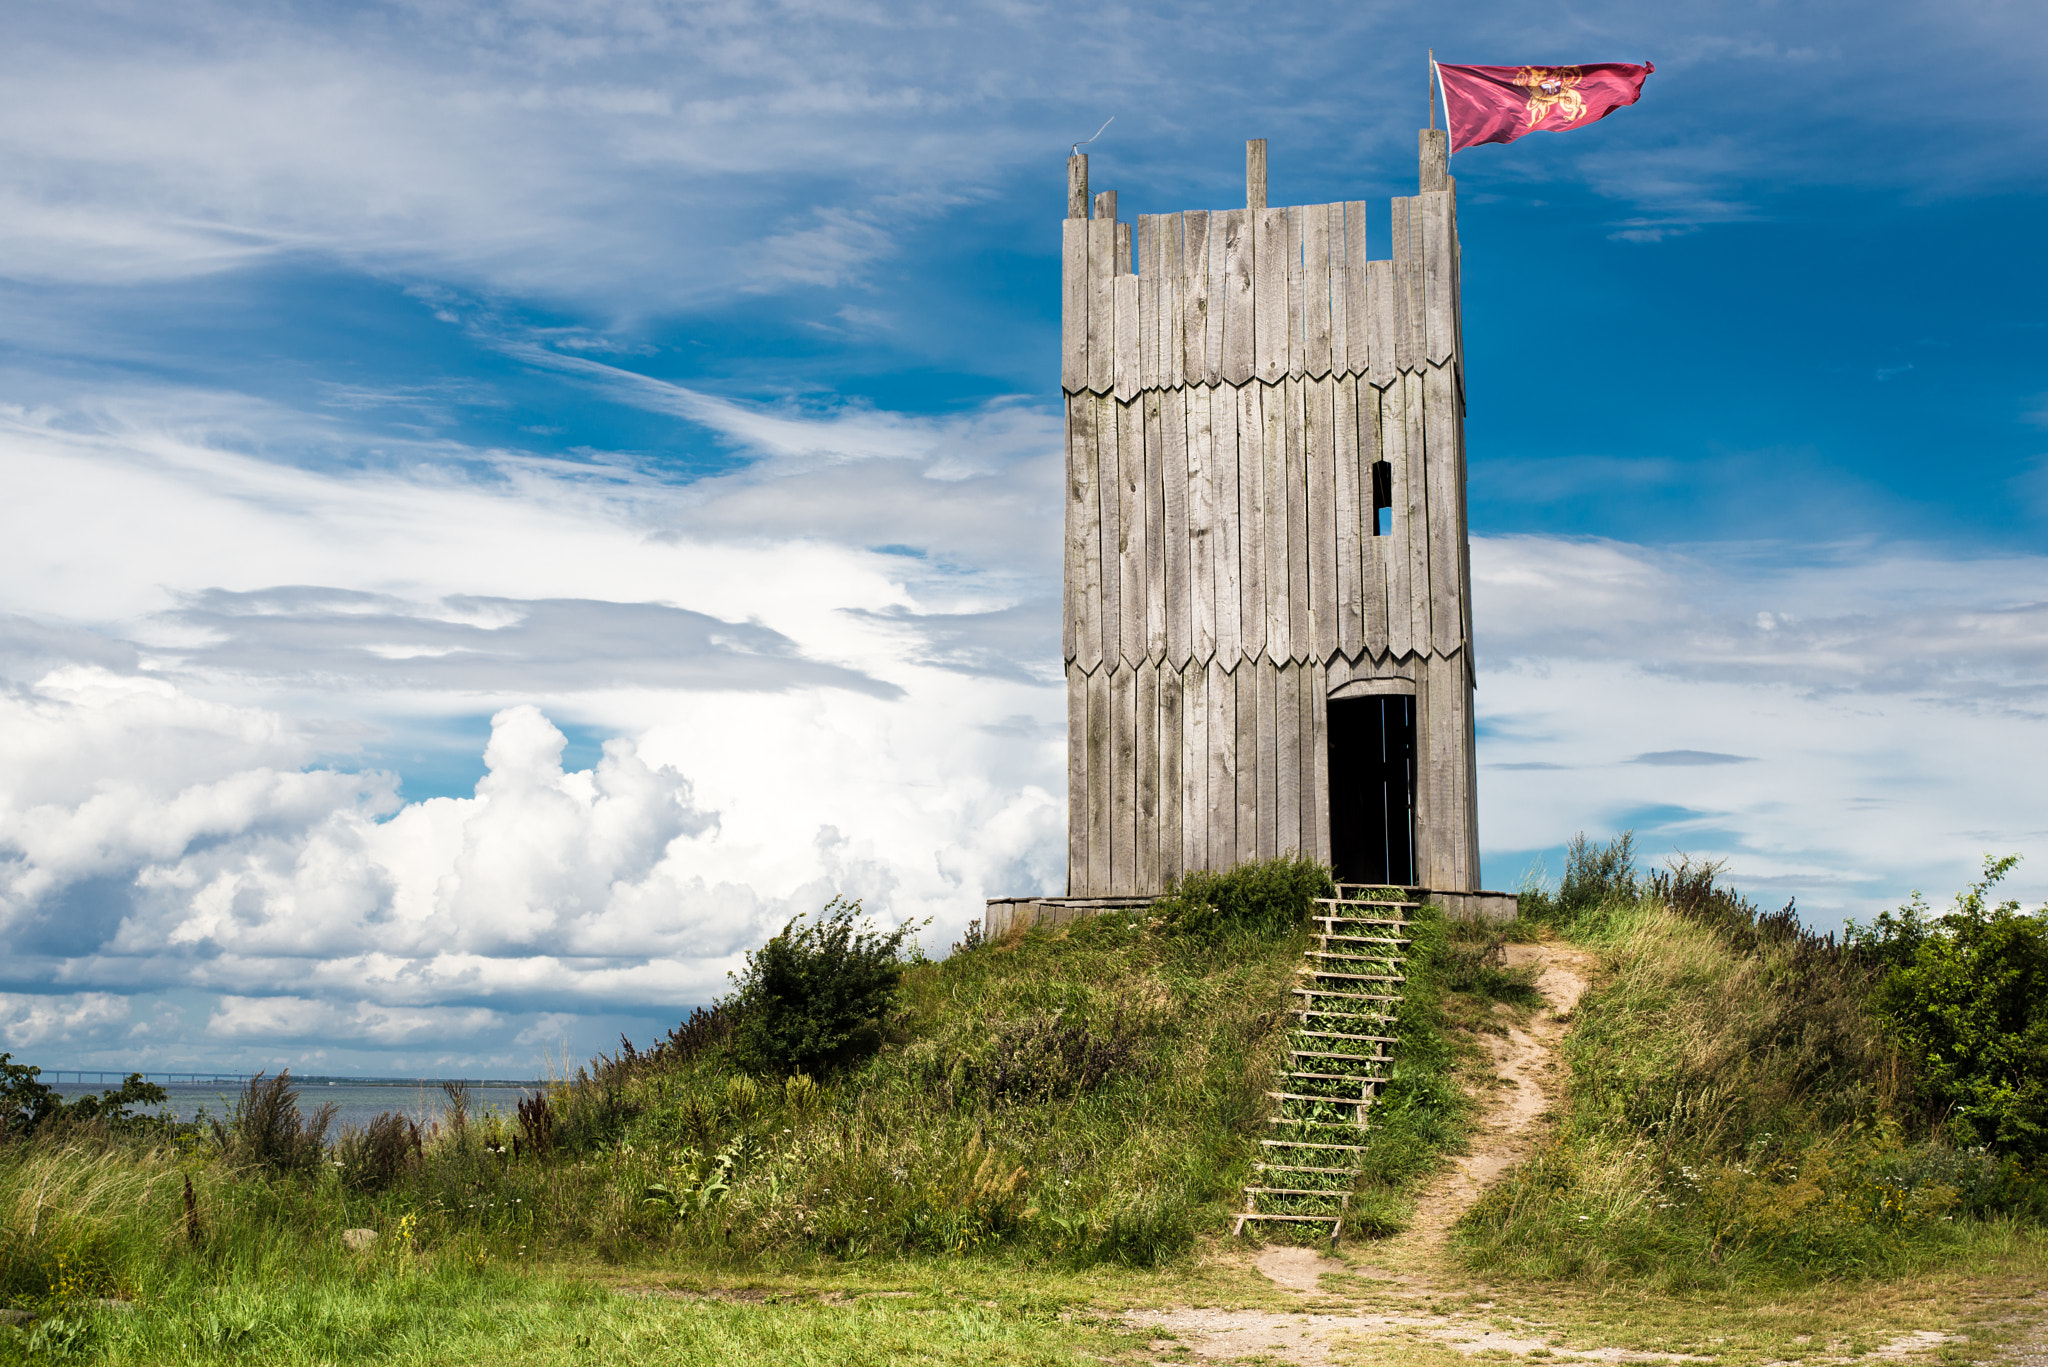 AF Zoom-Nikkor 35-70mm f/3.3-4.5 N sample photo. Sweden dreams - viking city gate, the tower photography